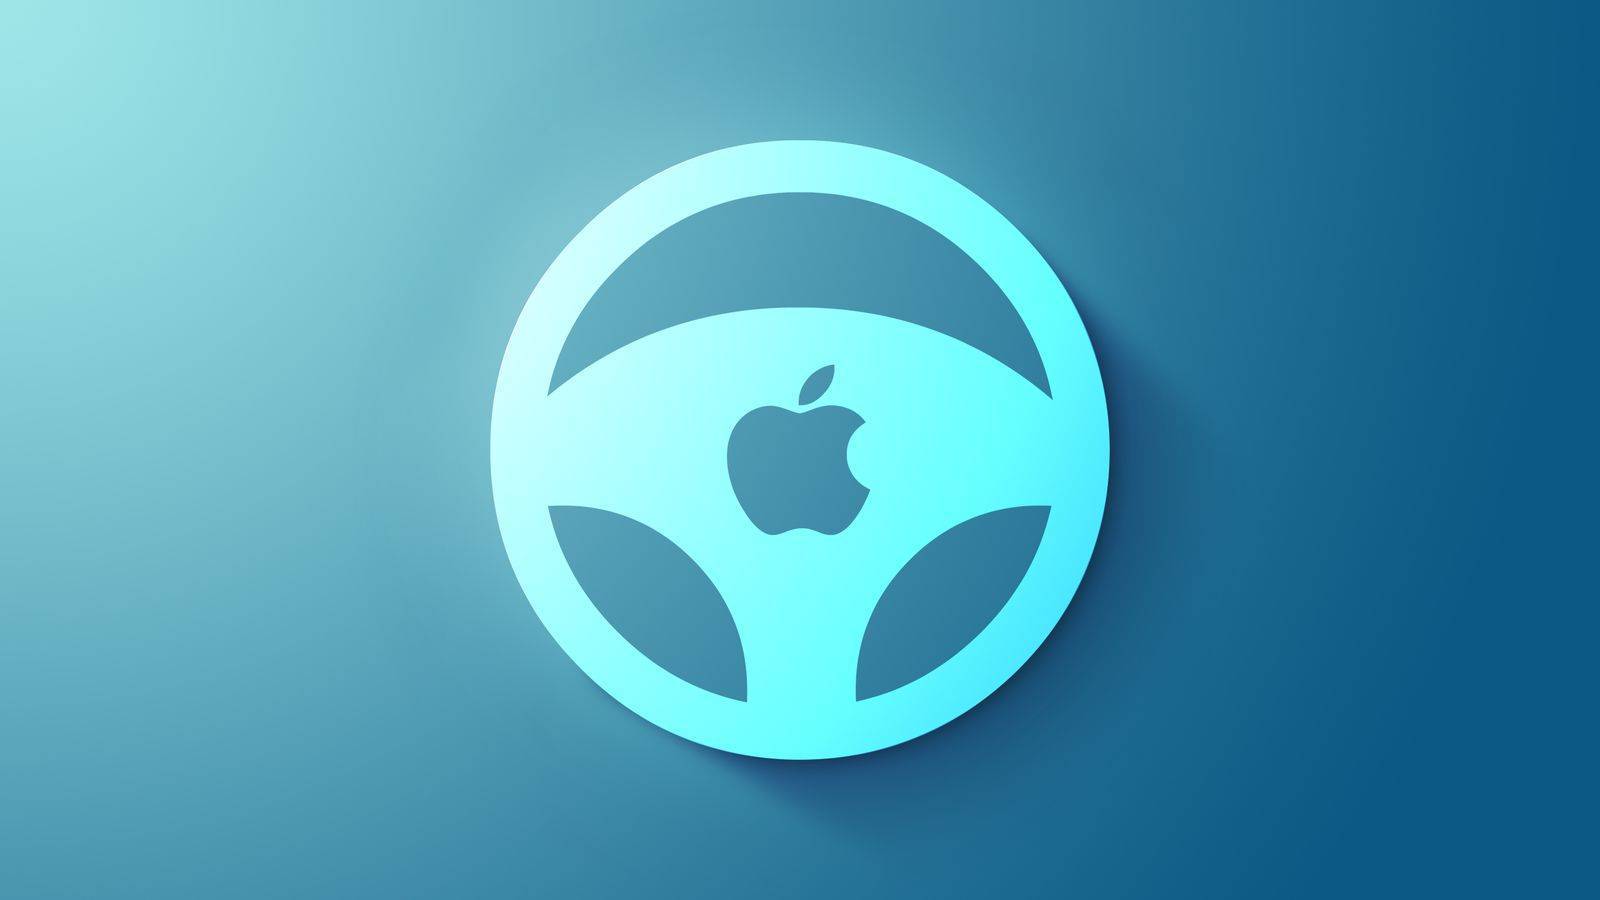 苹果怎样下泰坦之路破解版:原创
                苹果汽车负责挖坑，与特斯拉演戏？